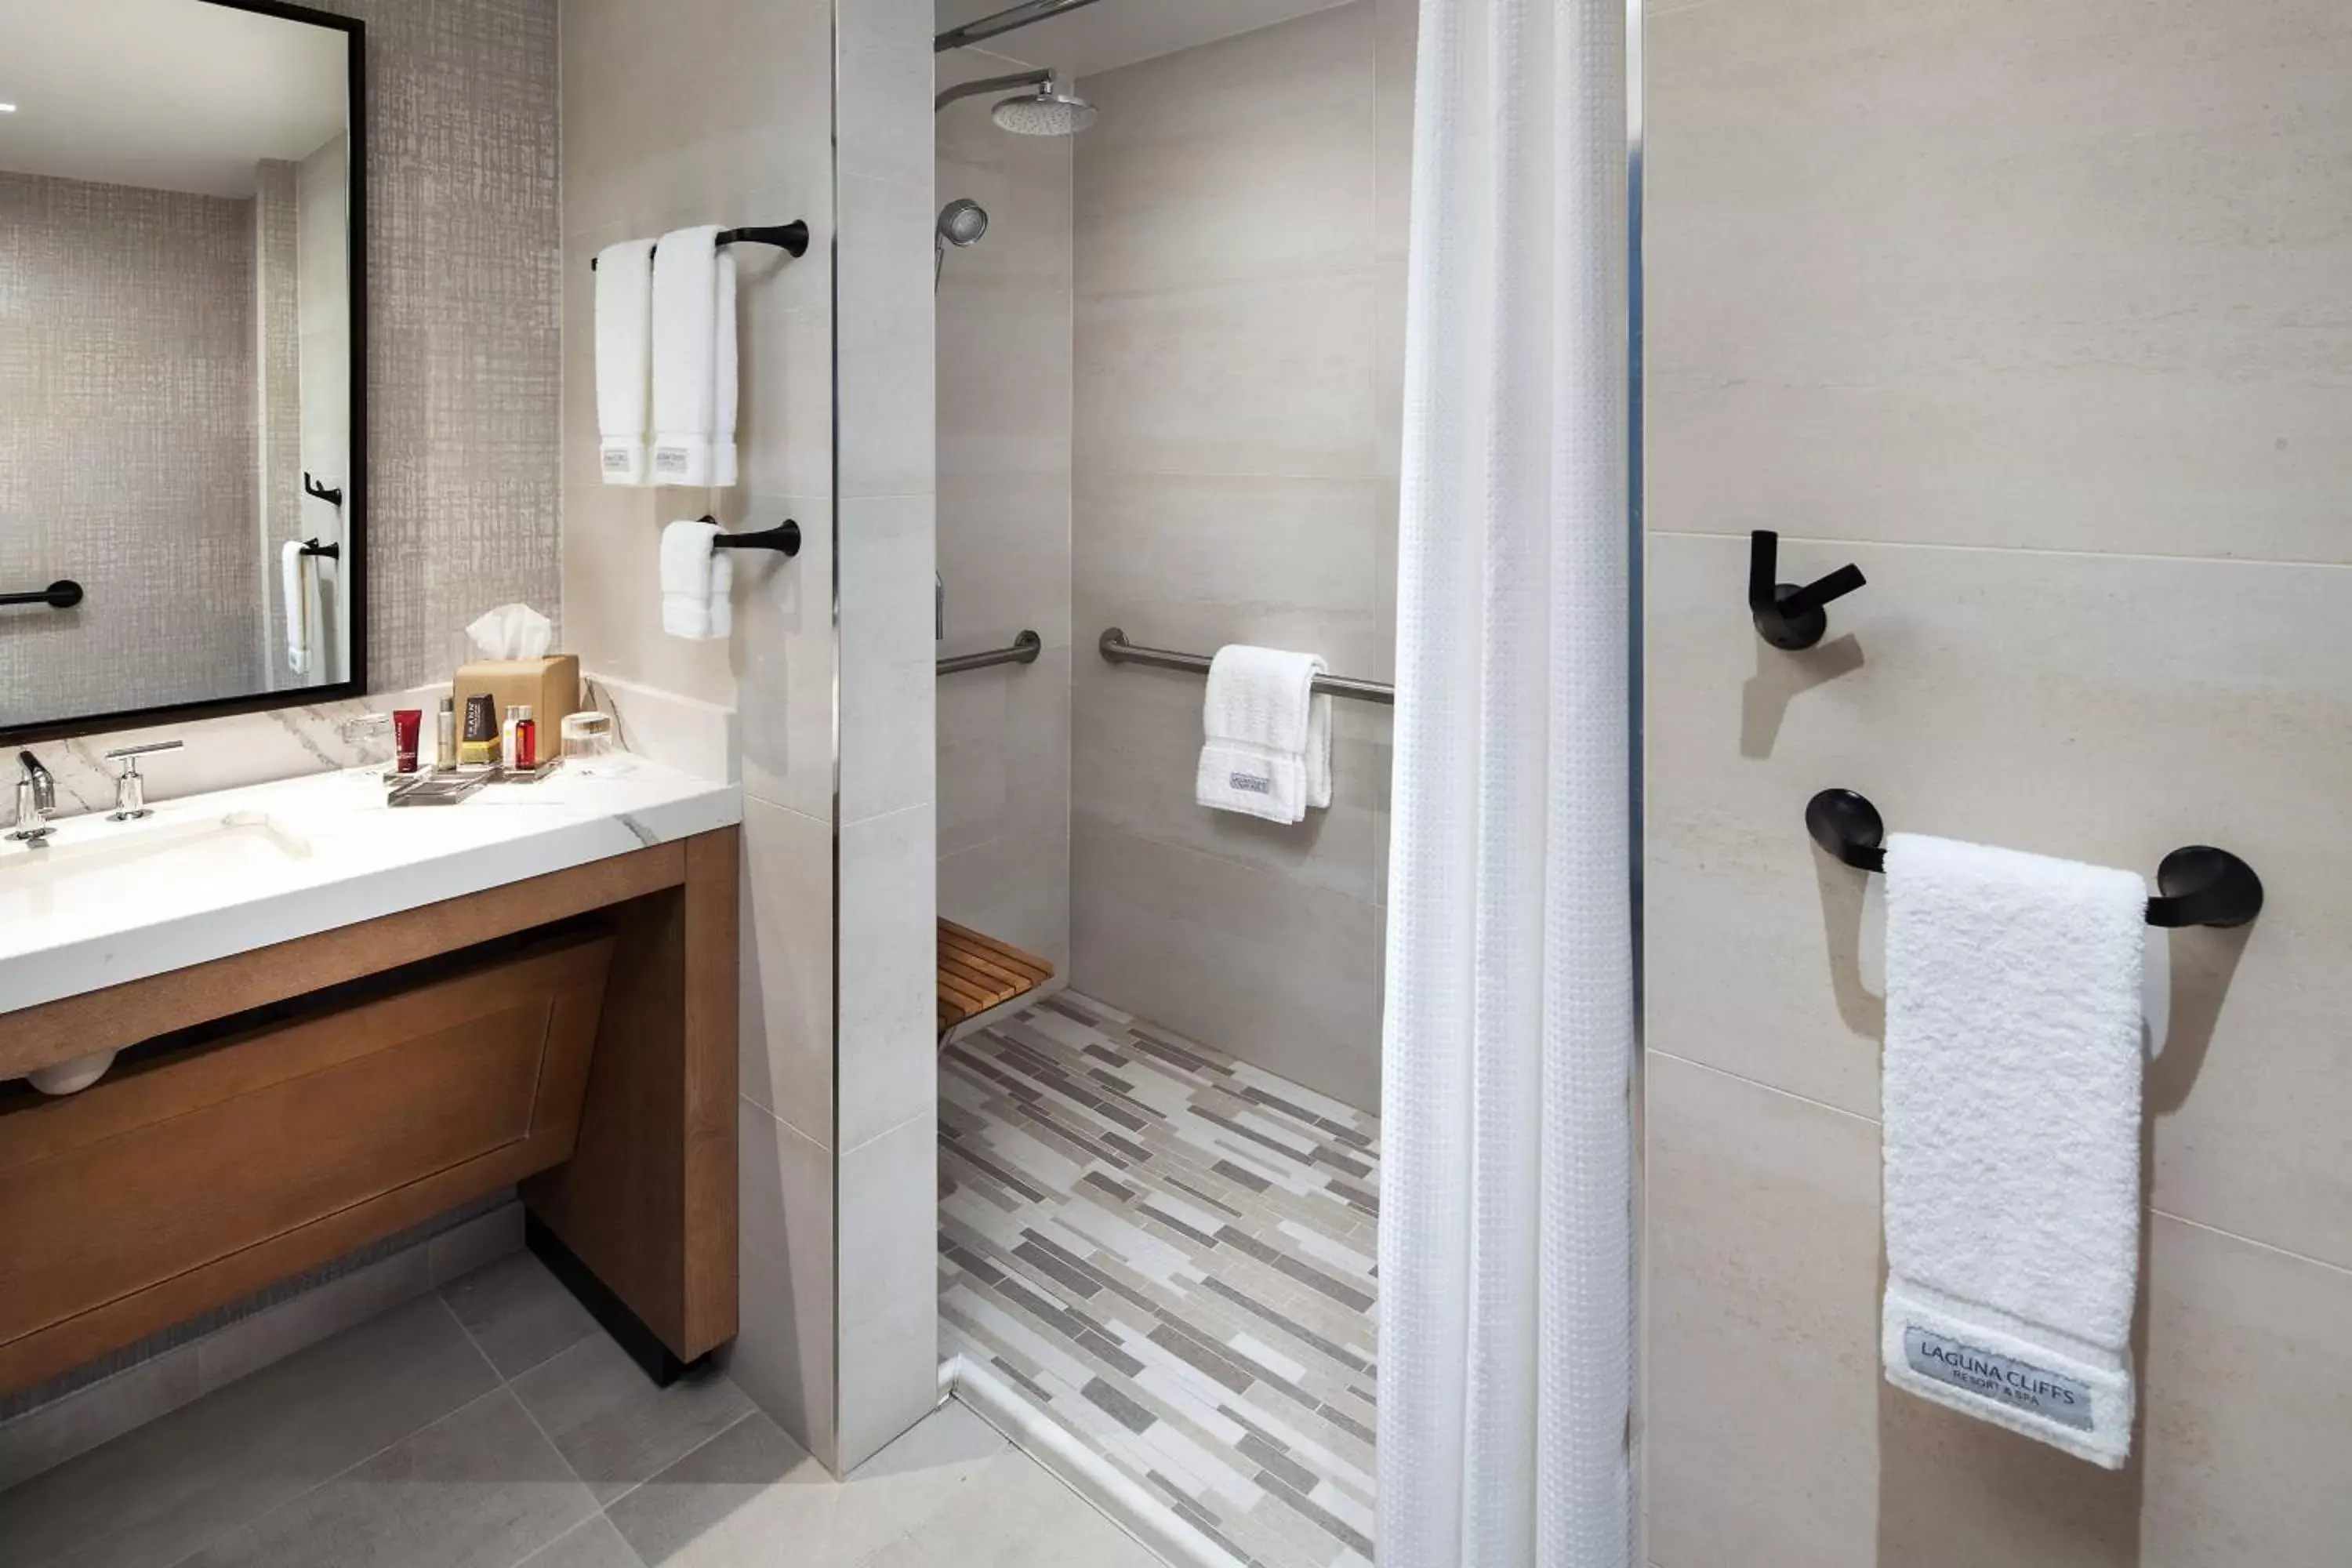 Bathroom in Laguna Cliffs Marriott Resort & Spa